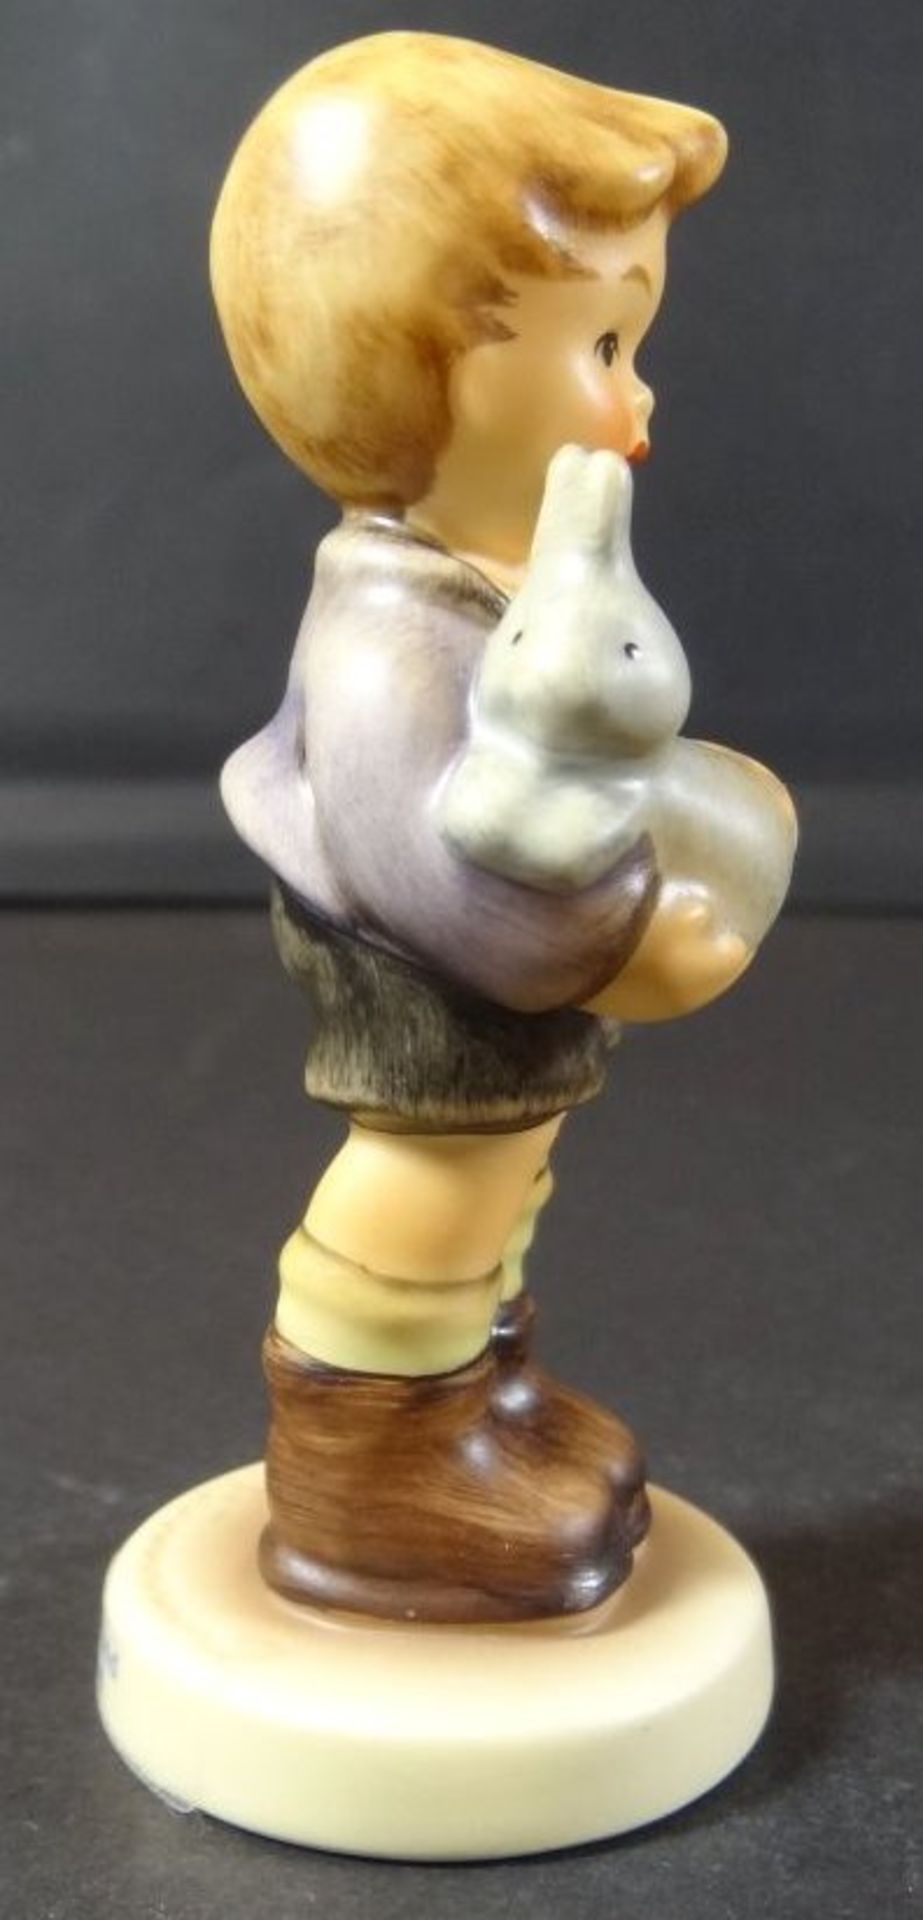 Hummel Figur "Mein kleiner Freund", H-9 cm - Bild 3 aus 6